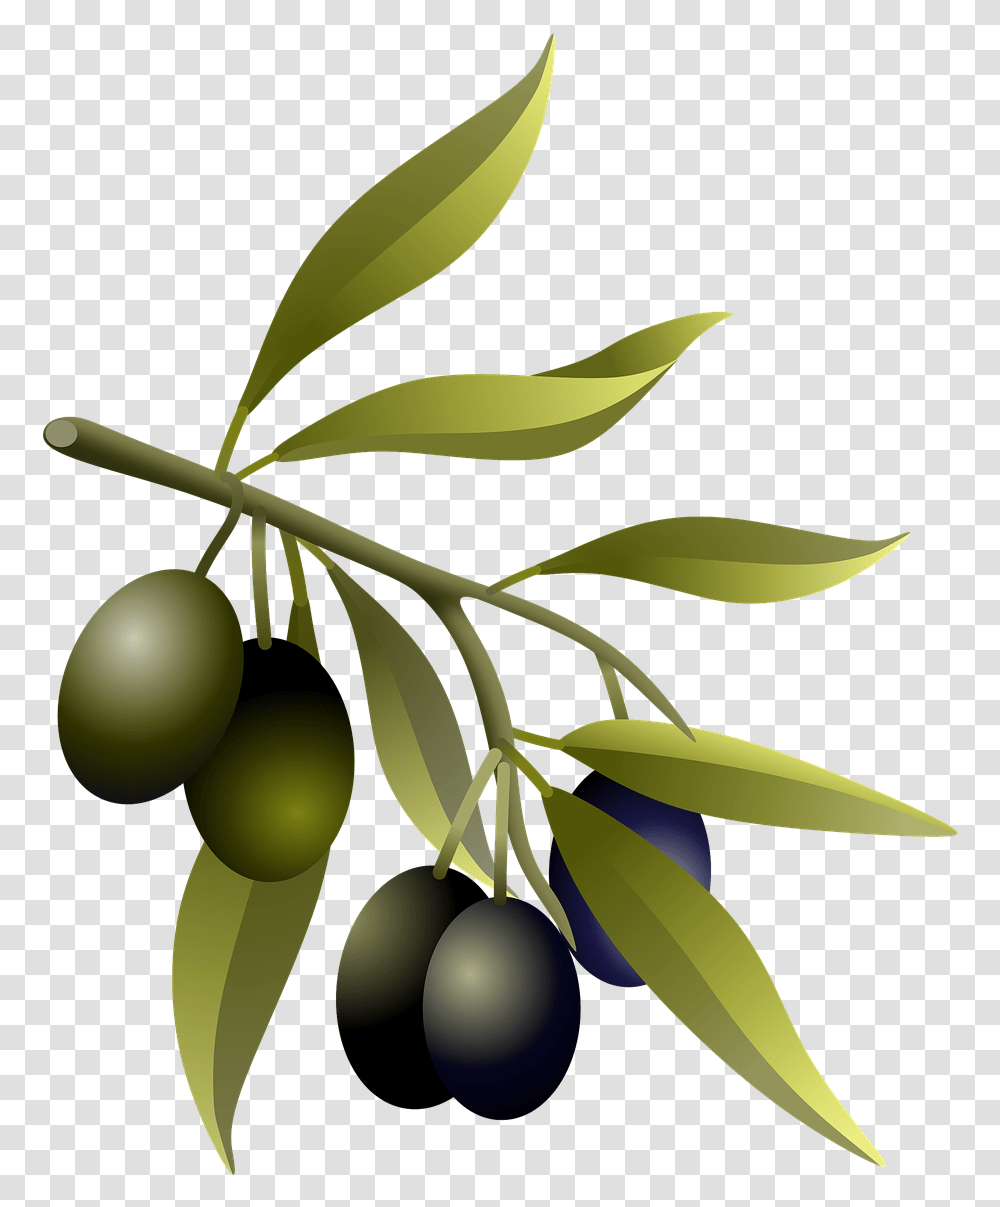 Olives Oil Fruits Olive Free Image On Pixabay Olive Branch Real, Plant, Leaf, Tree, Annonaceae Transparent Png